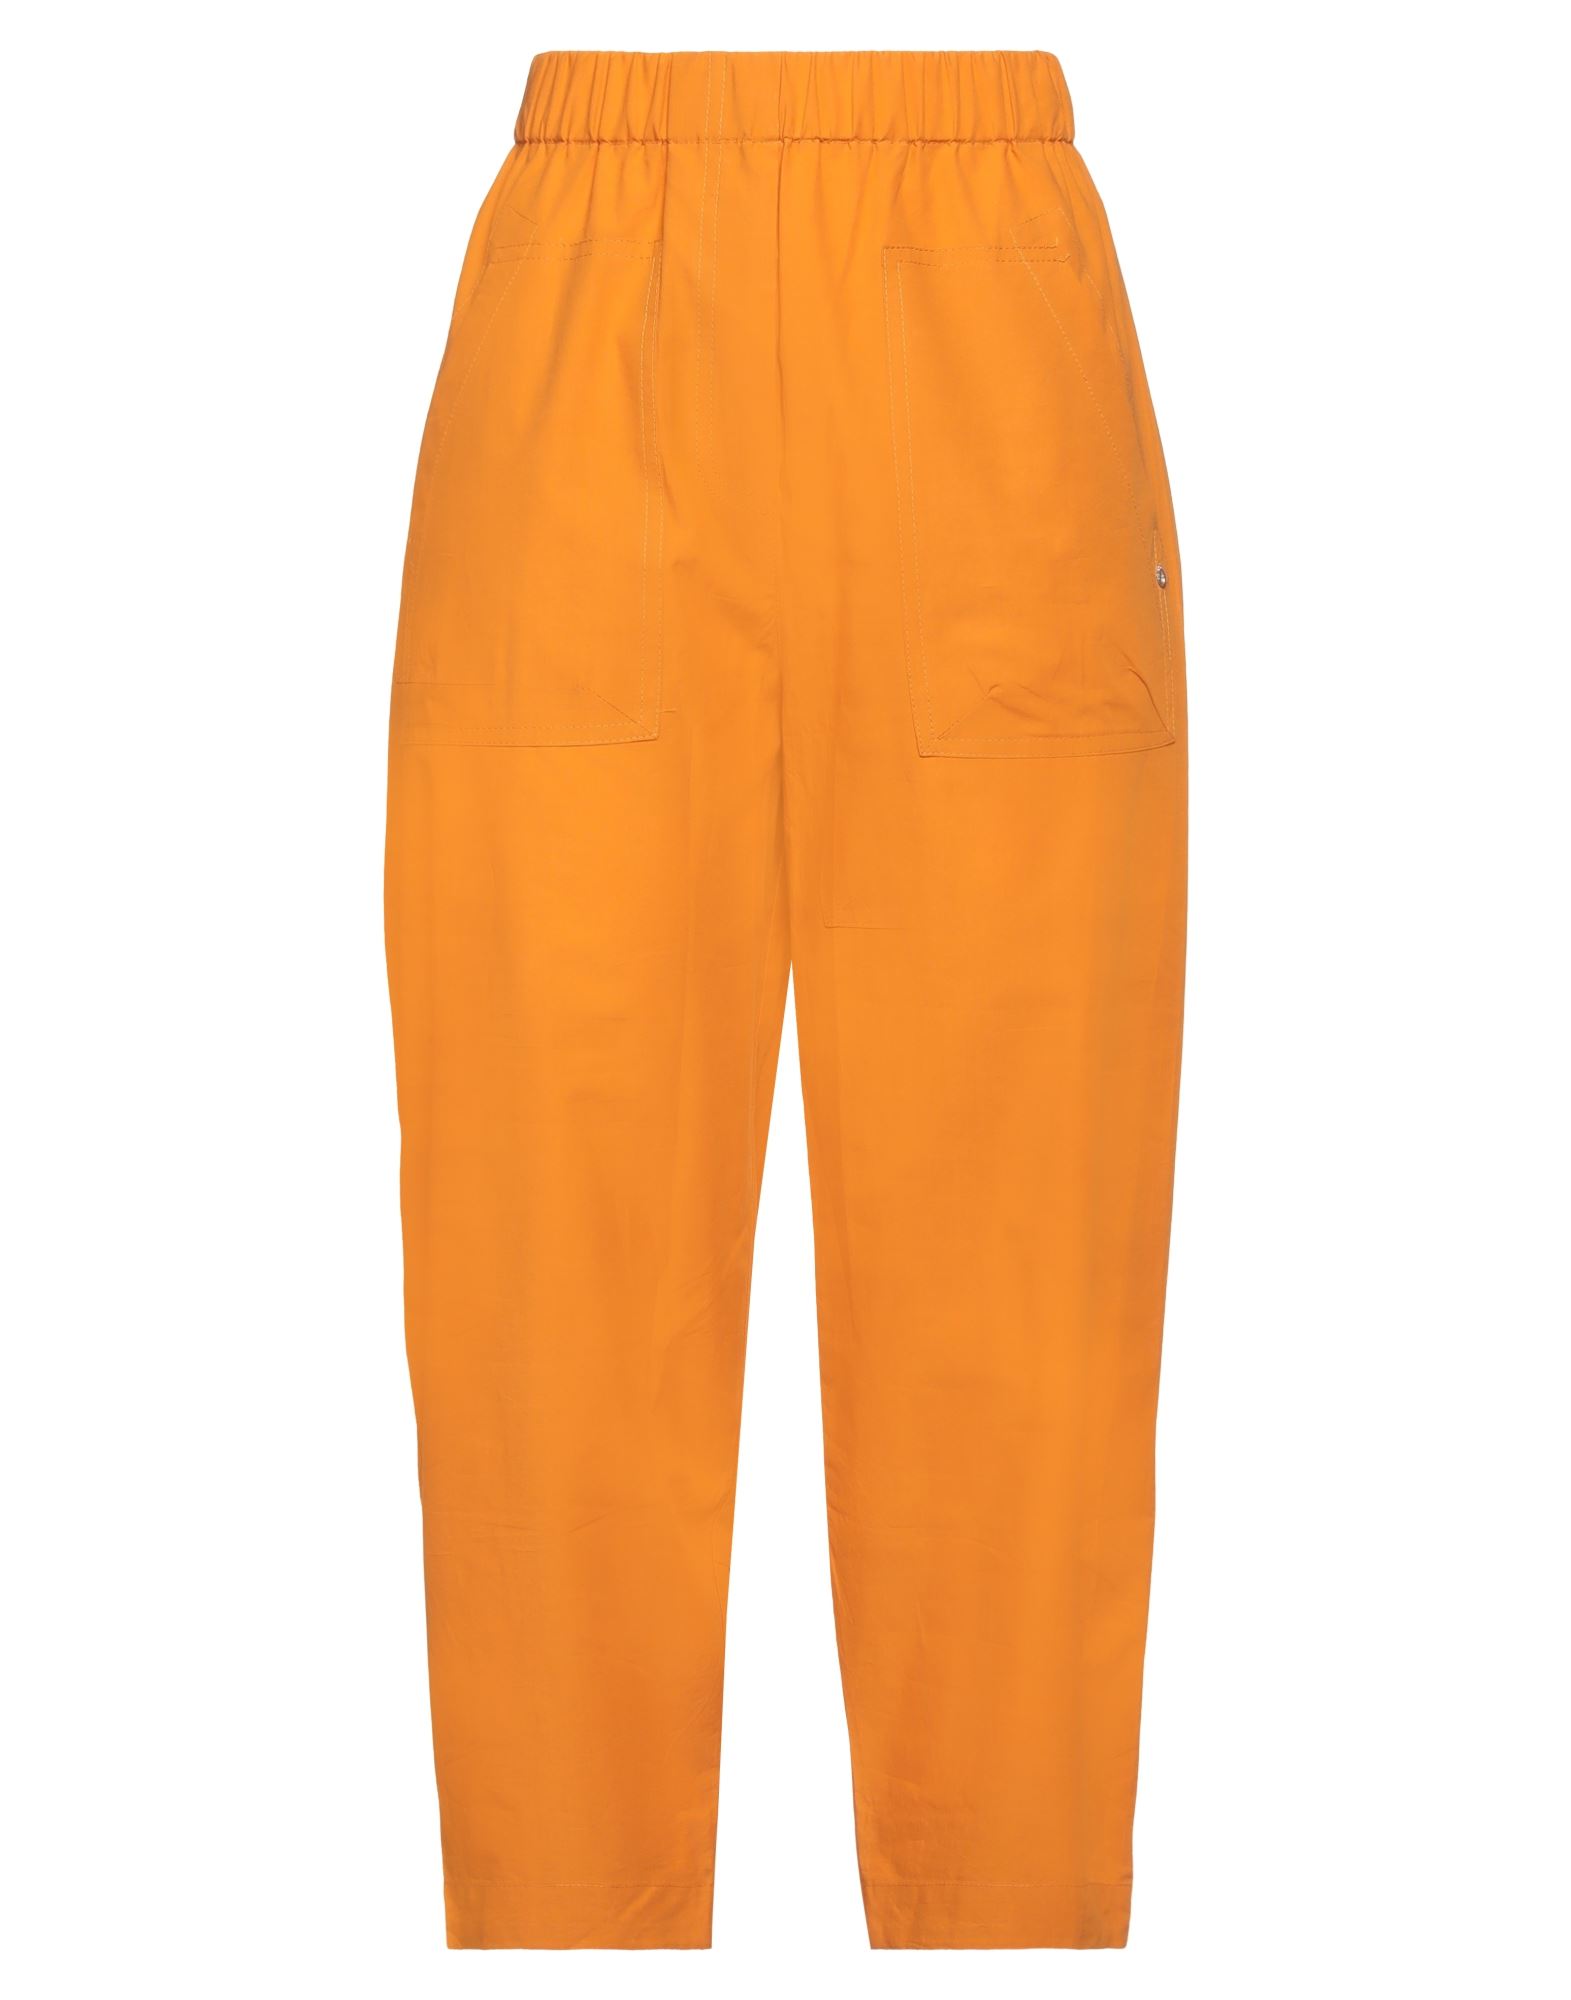 Ottod'ame Woman Pants Orange Size 6 Cotton